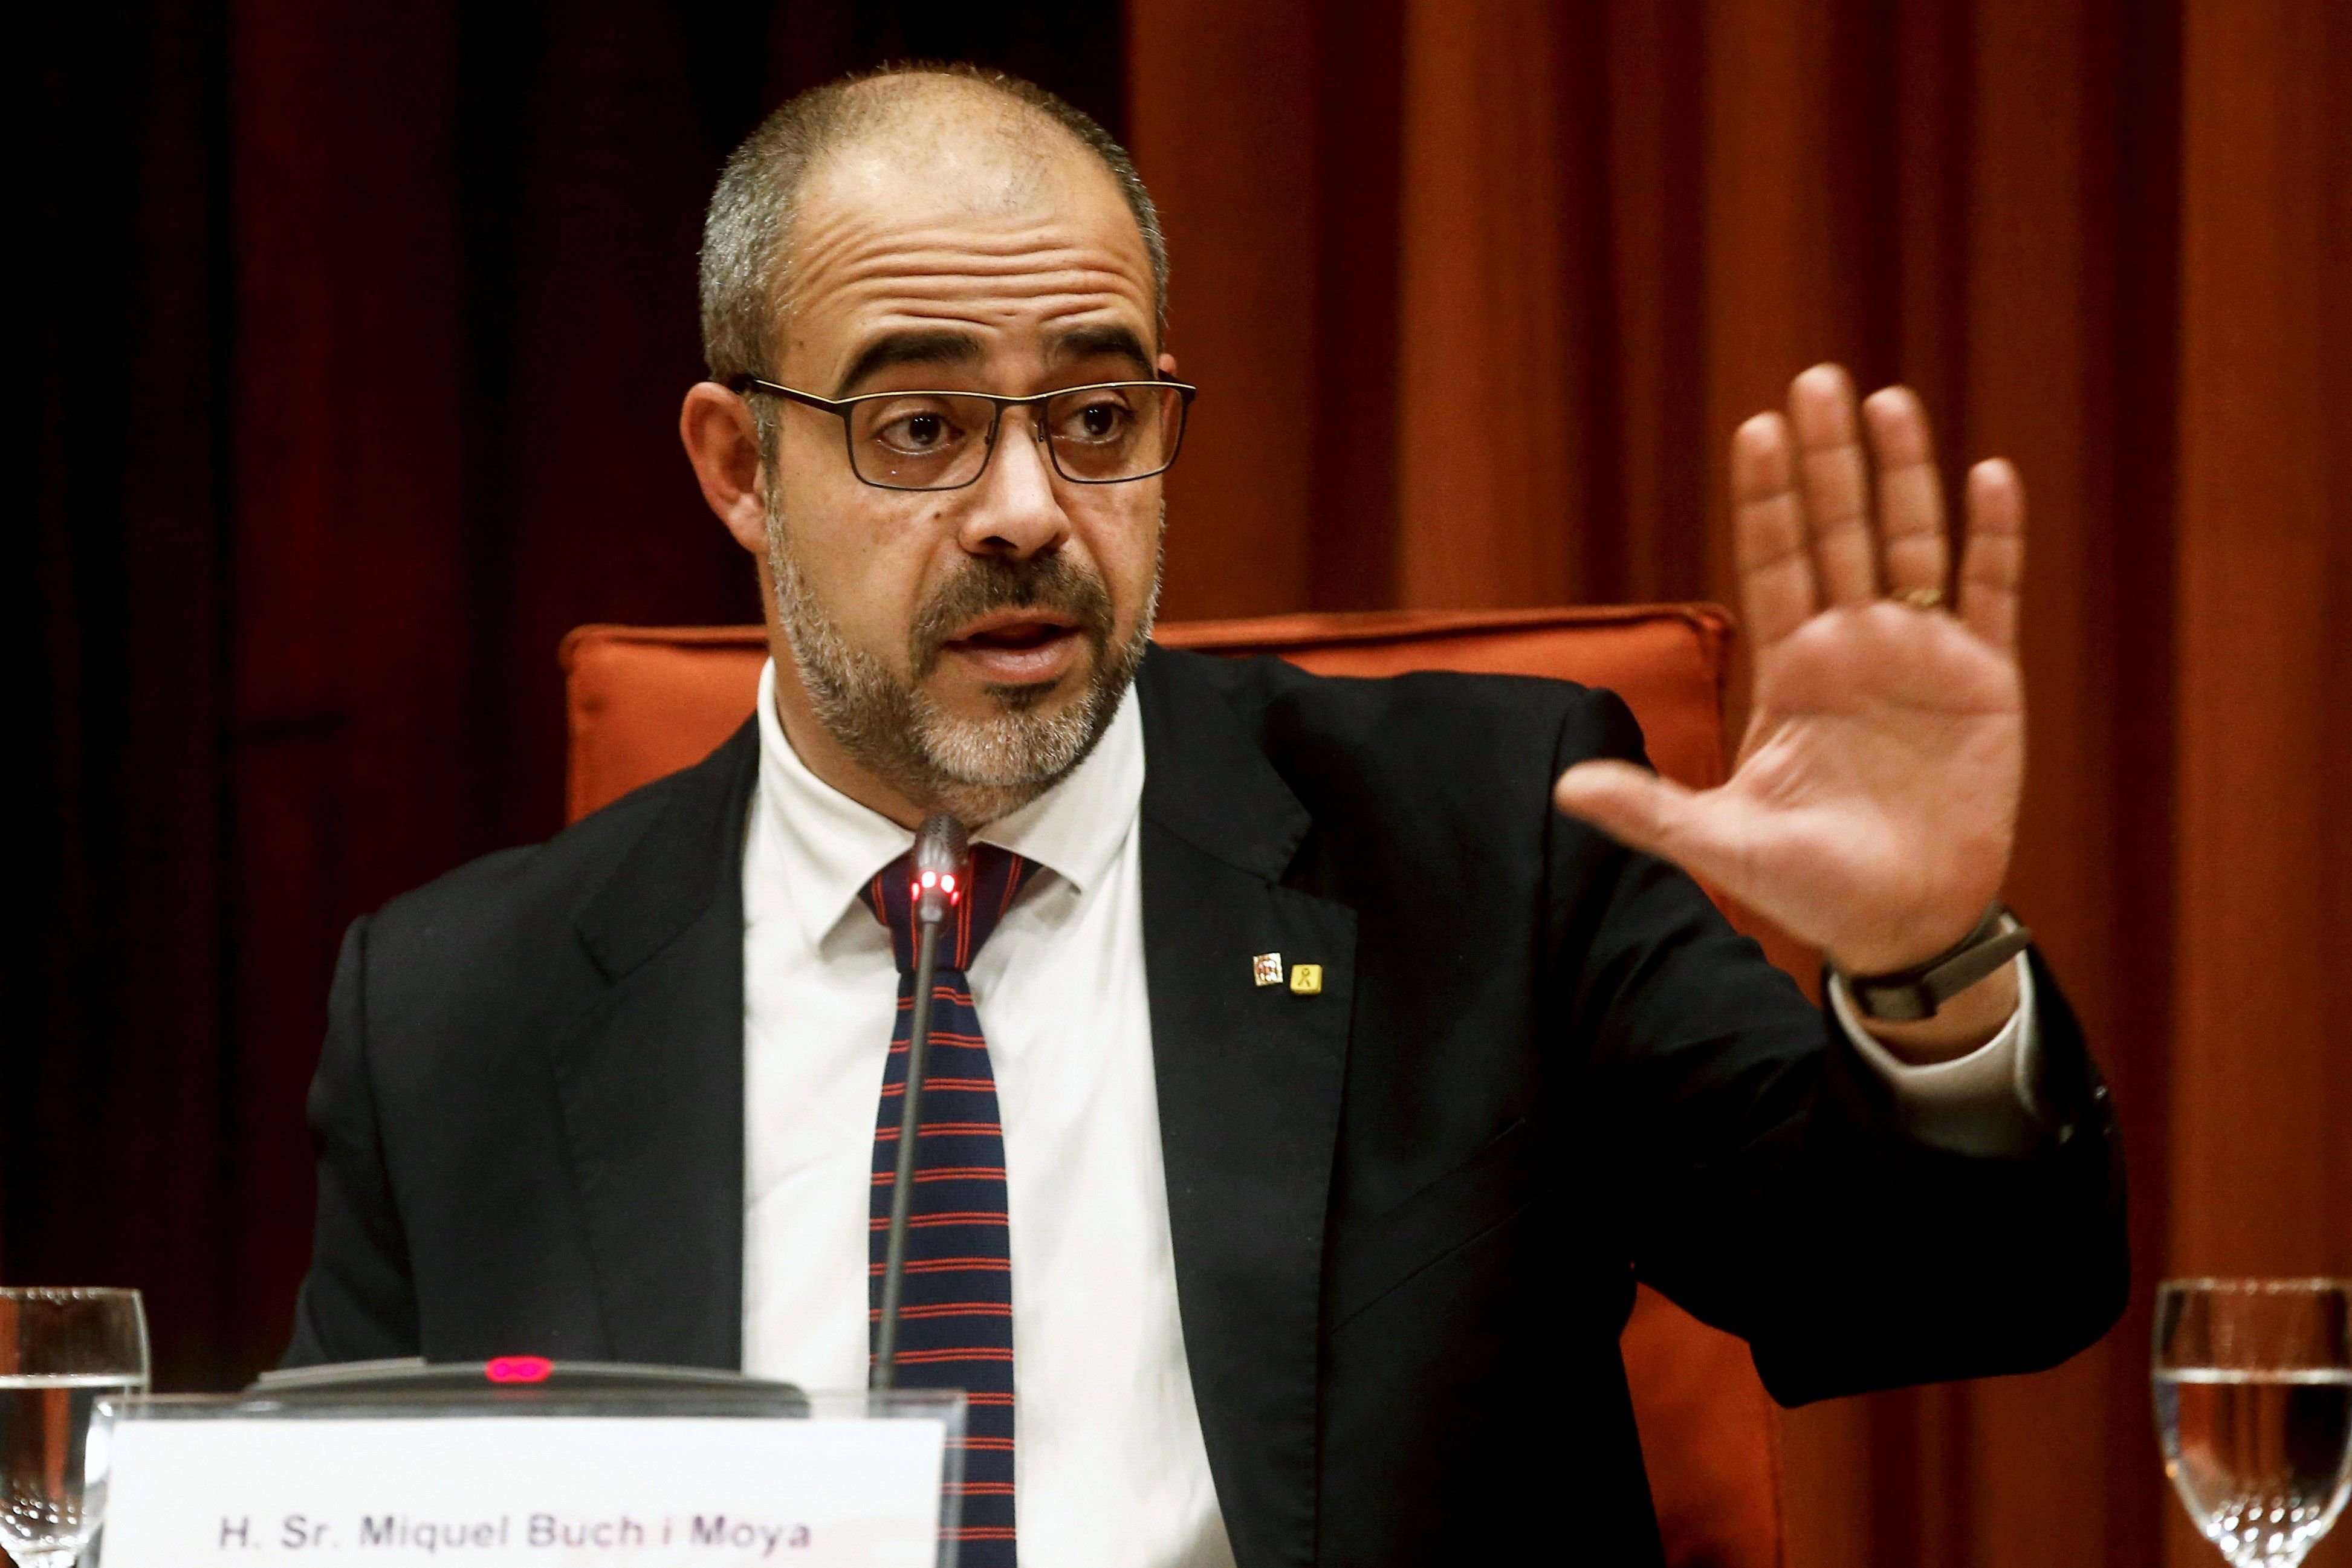 El TSJC admet la querella contra Buch per l'escorta de Puigdemont a l'exili